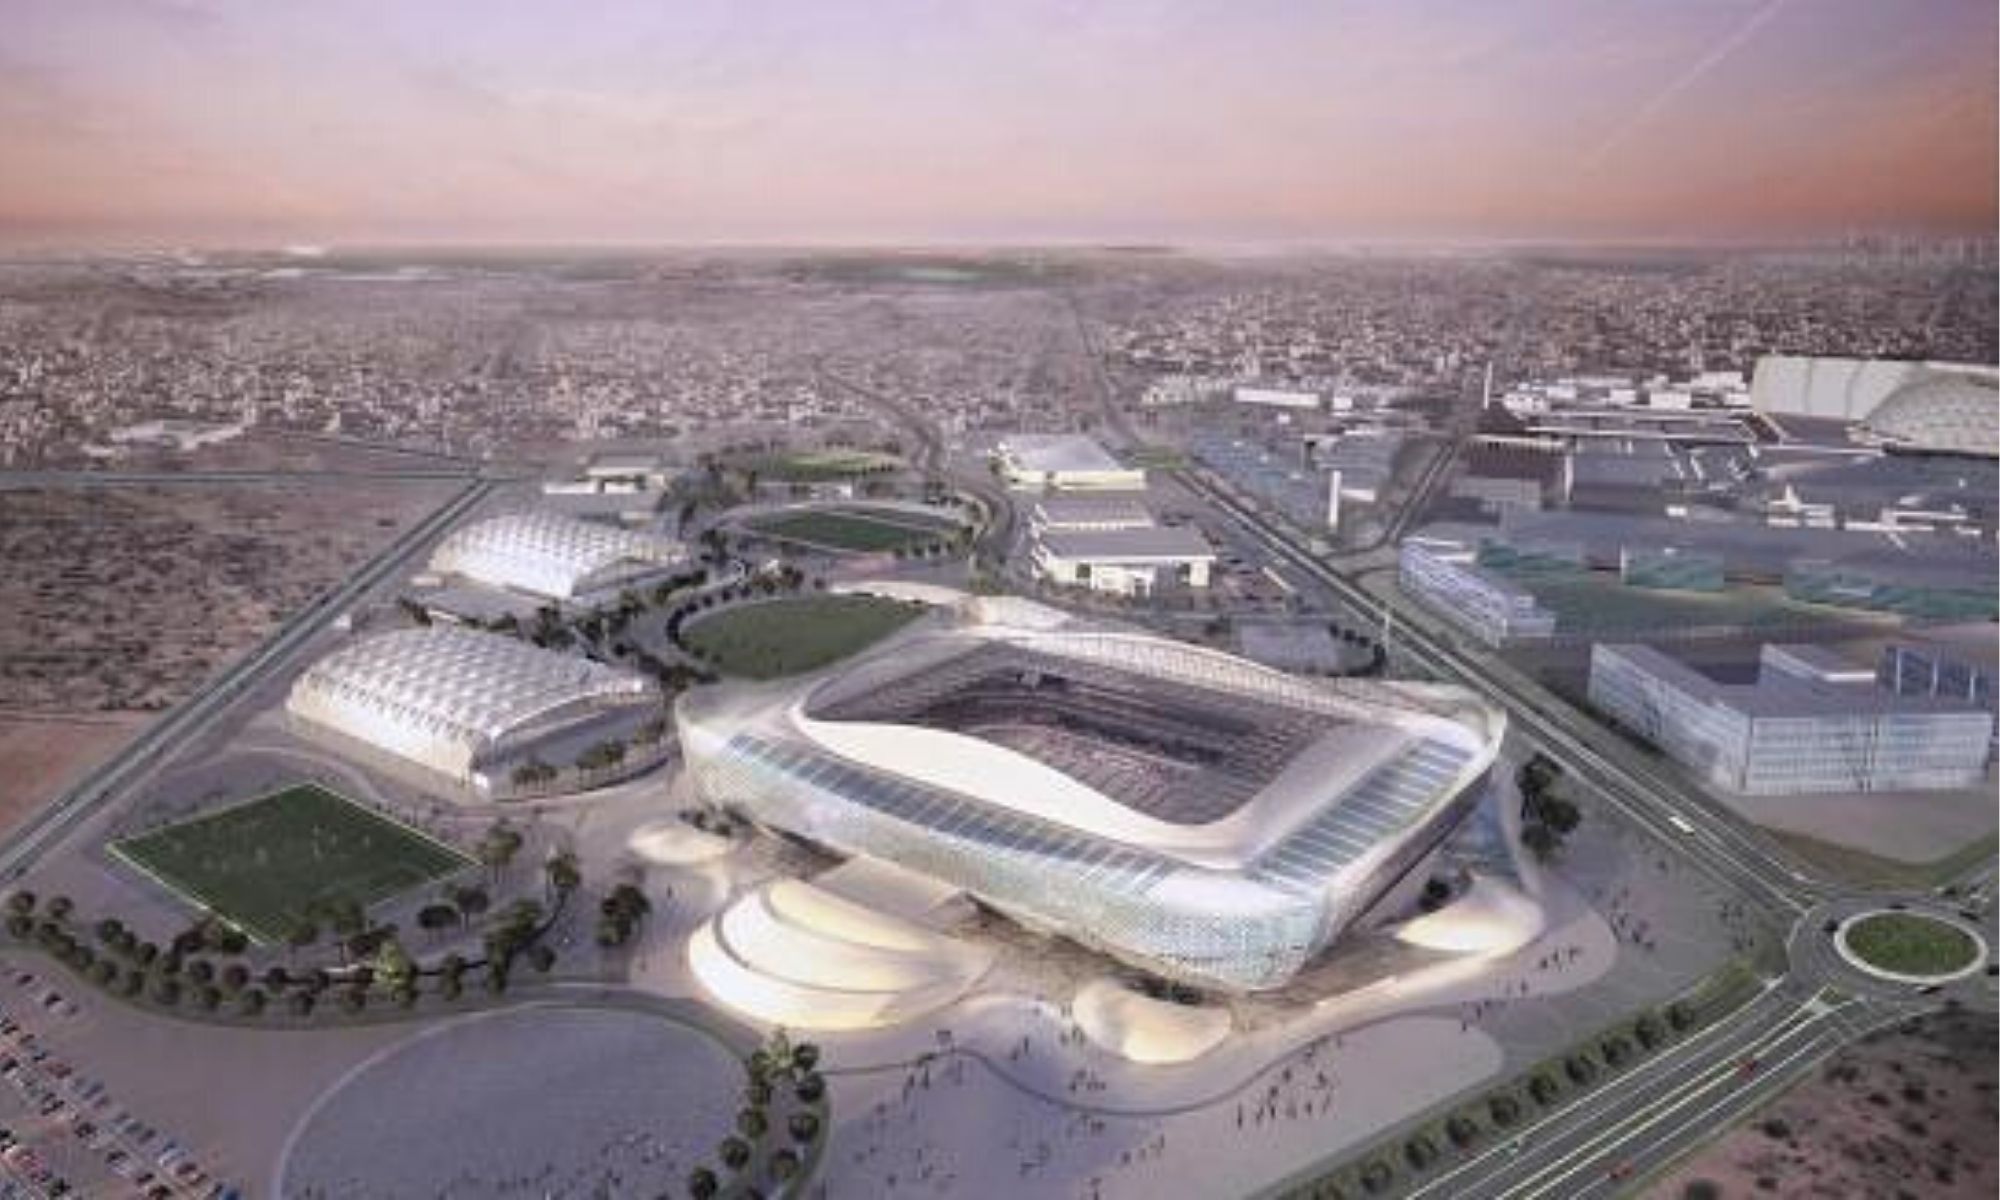 FranceInfo, Français du monde : “Le Qatar rouvre ses portes pour la Coupe du monde 2022“